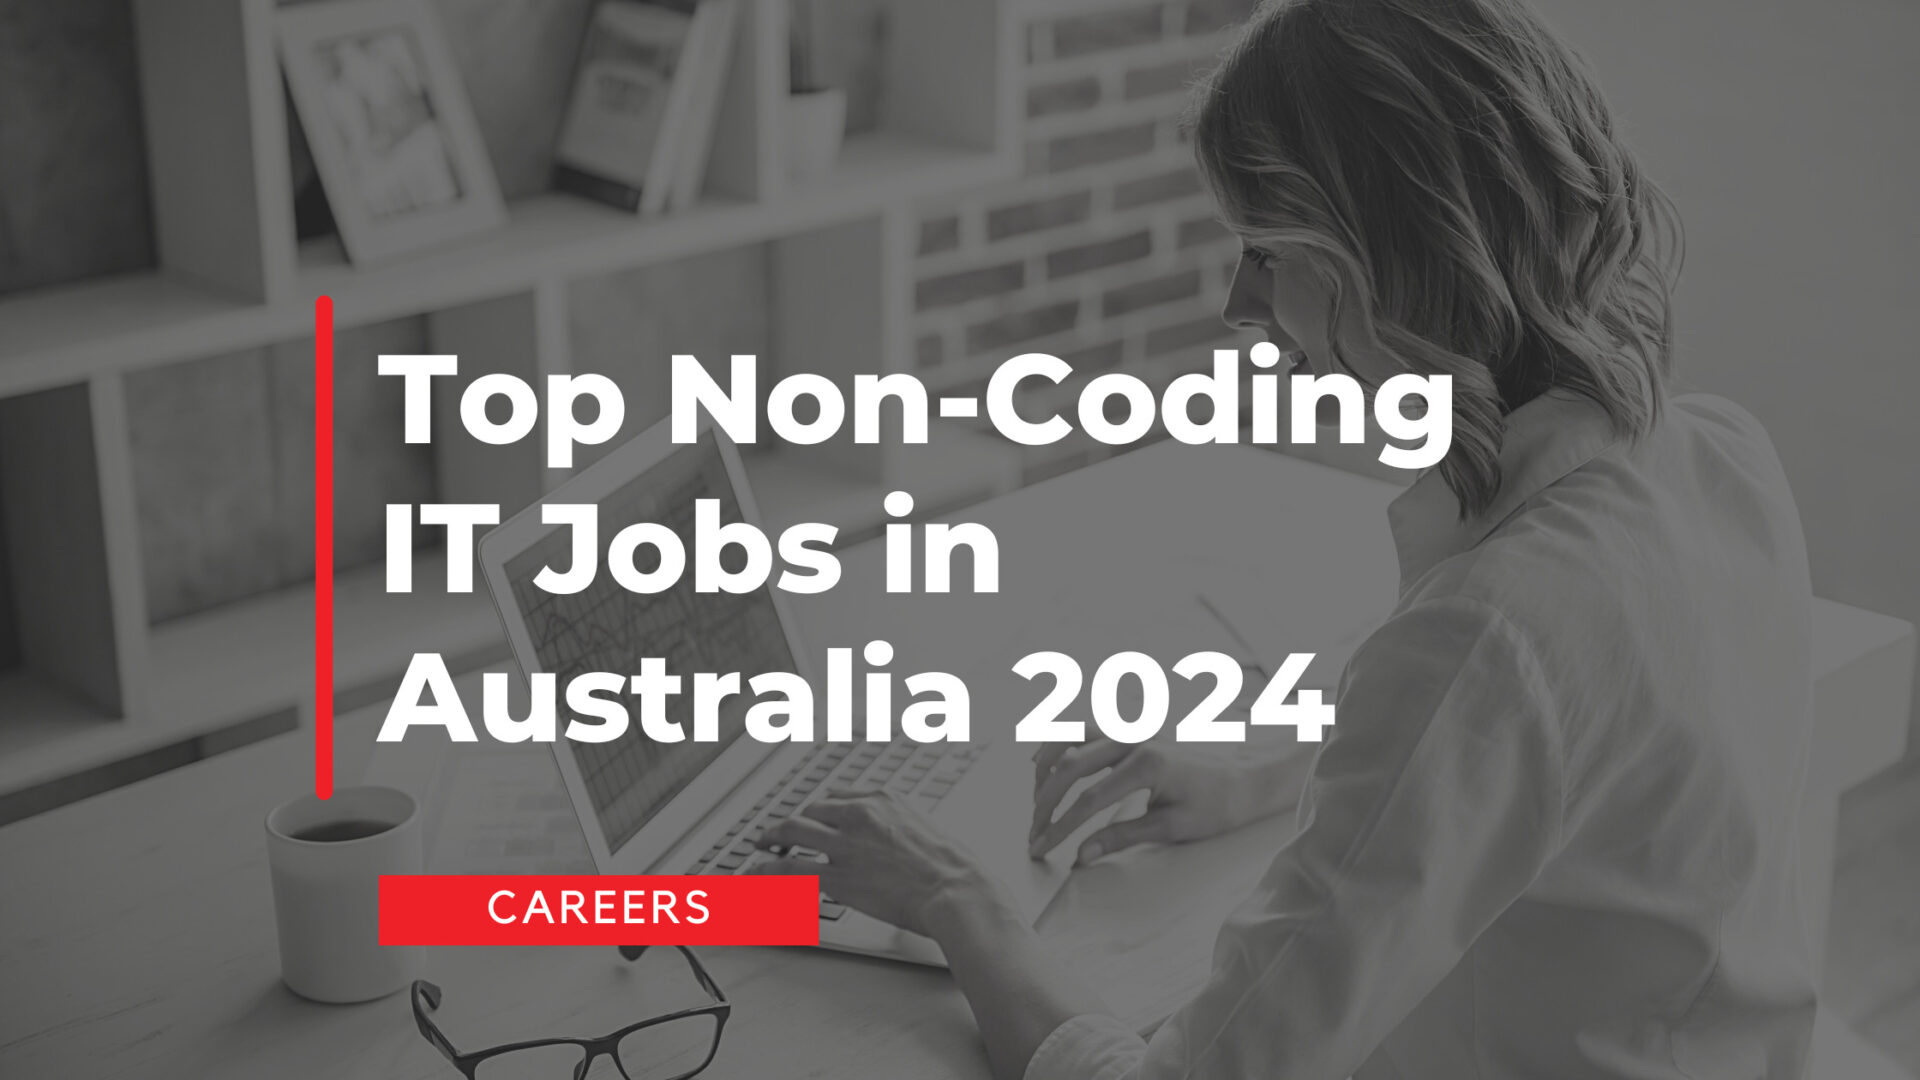 Top Non-Coding IT Jobs in Australia 2024